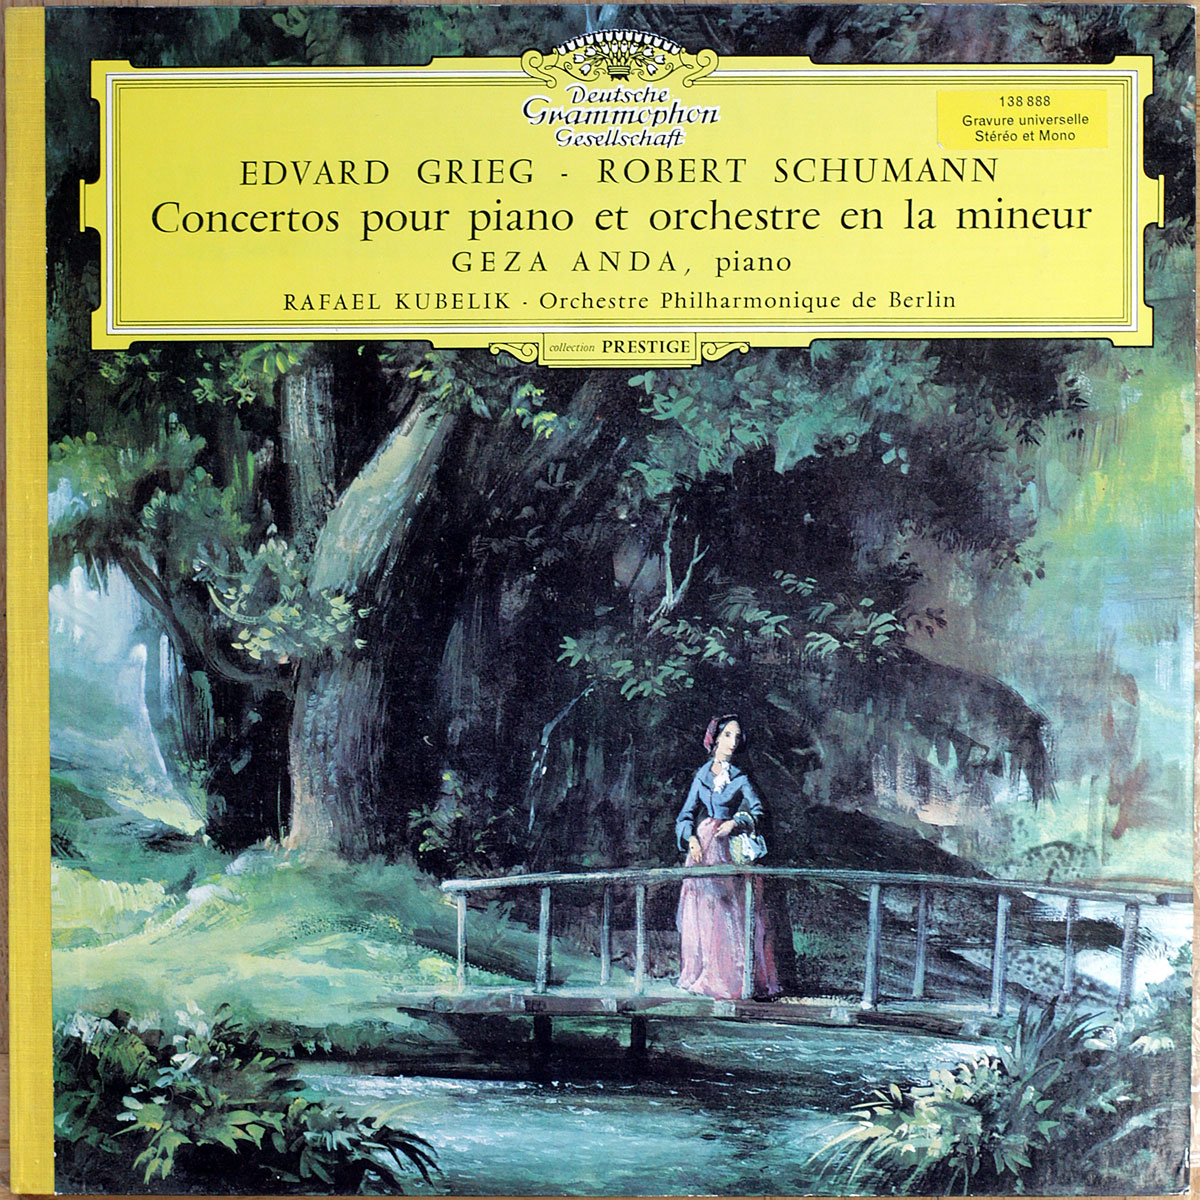 Grieg – Concerto pour piano • Schumann – Concerto pour piano • DGG 138 888 • Géza Anda • Berliner Philharmoniker • Rafael Kubelik